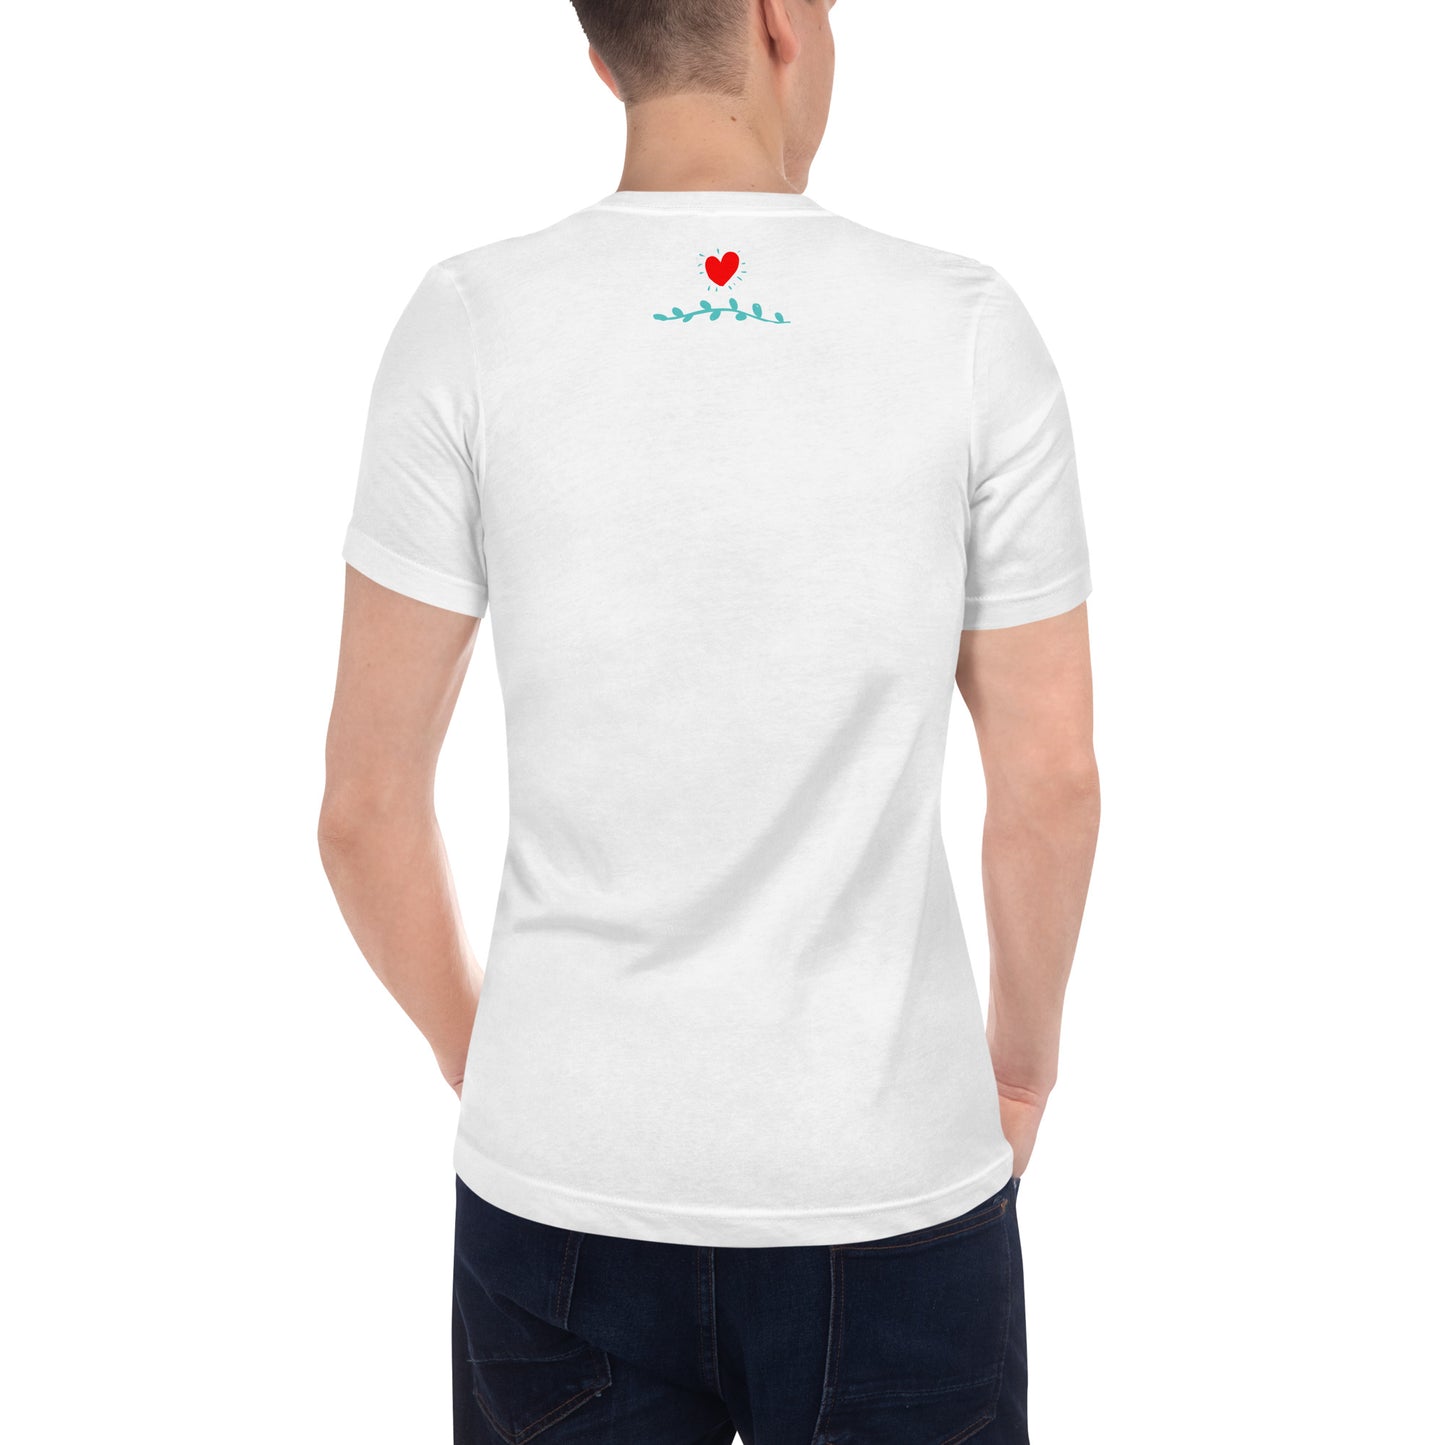 Camiseta "Together Forever" de manga corta y cuello de pico unisex